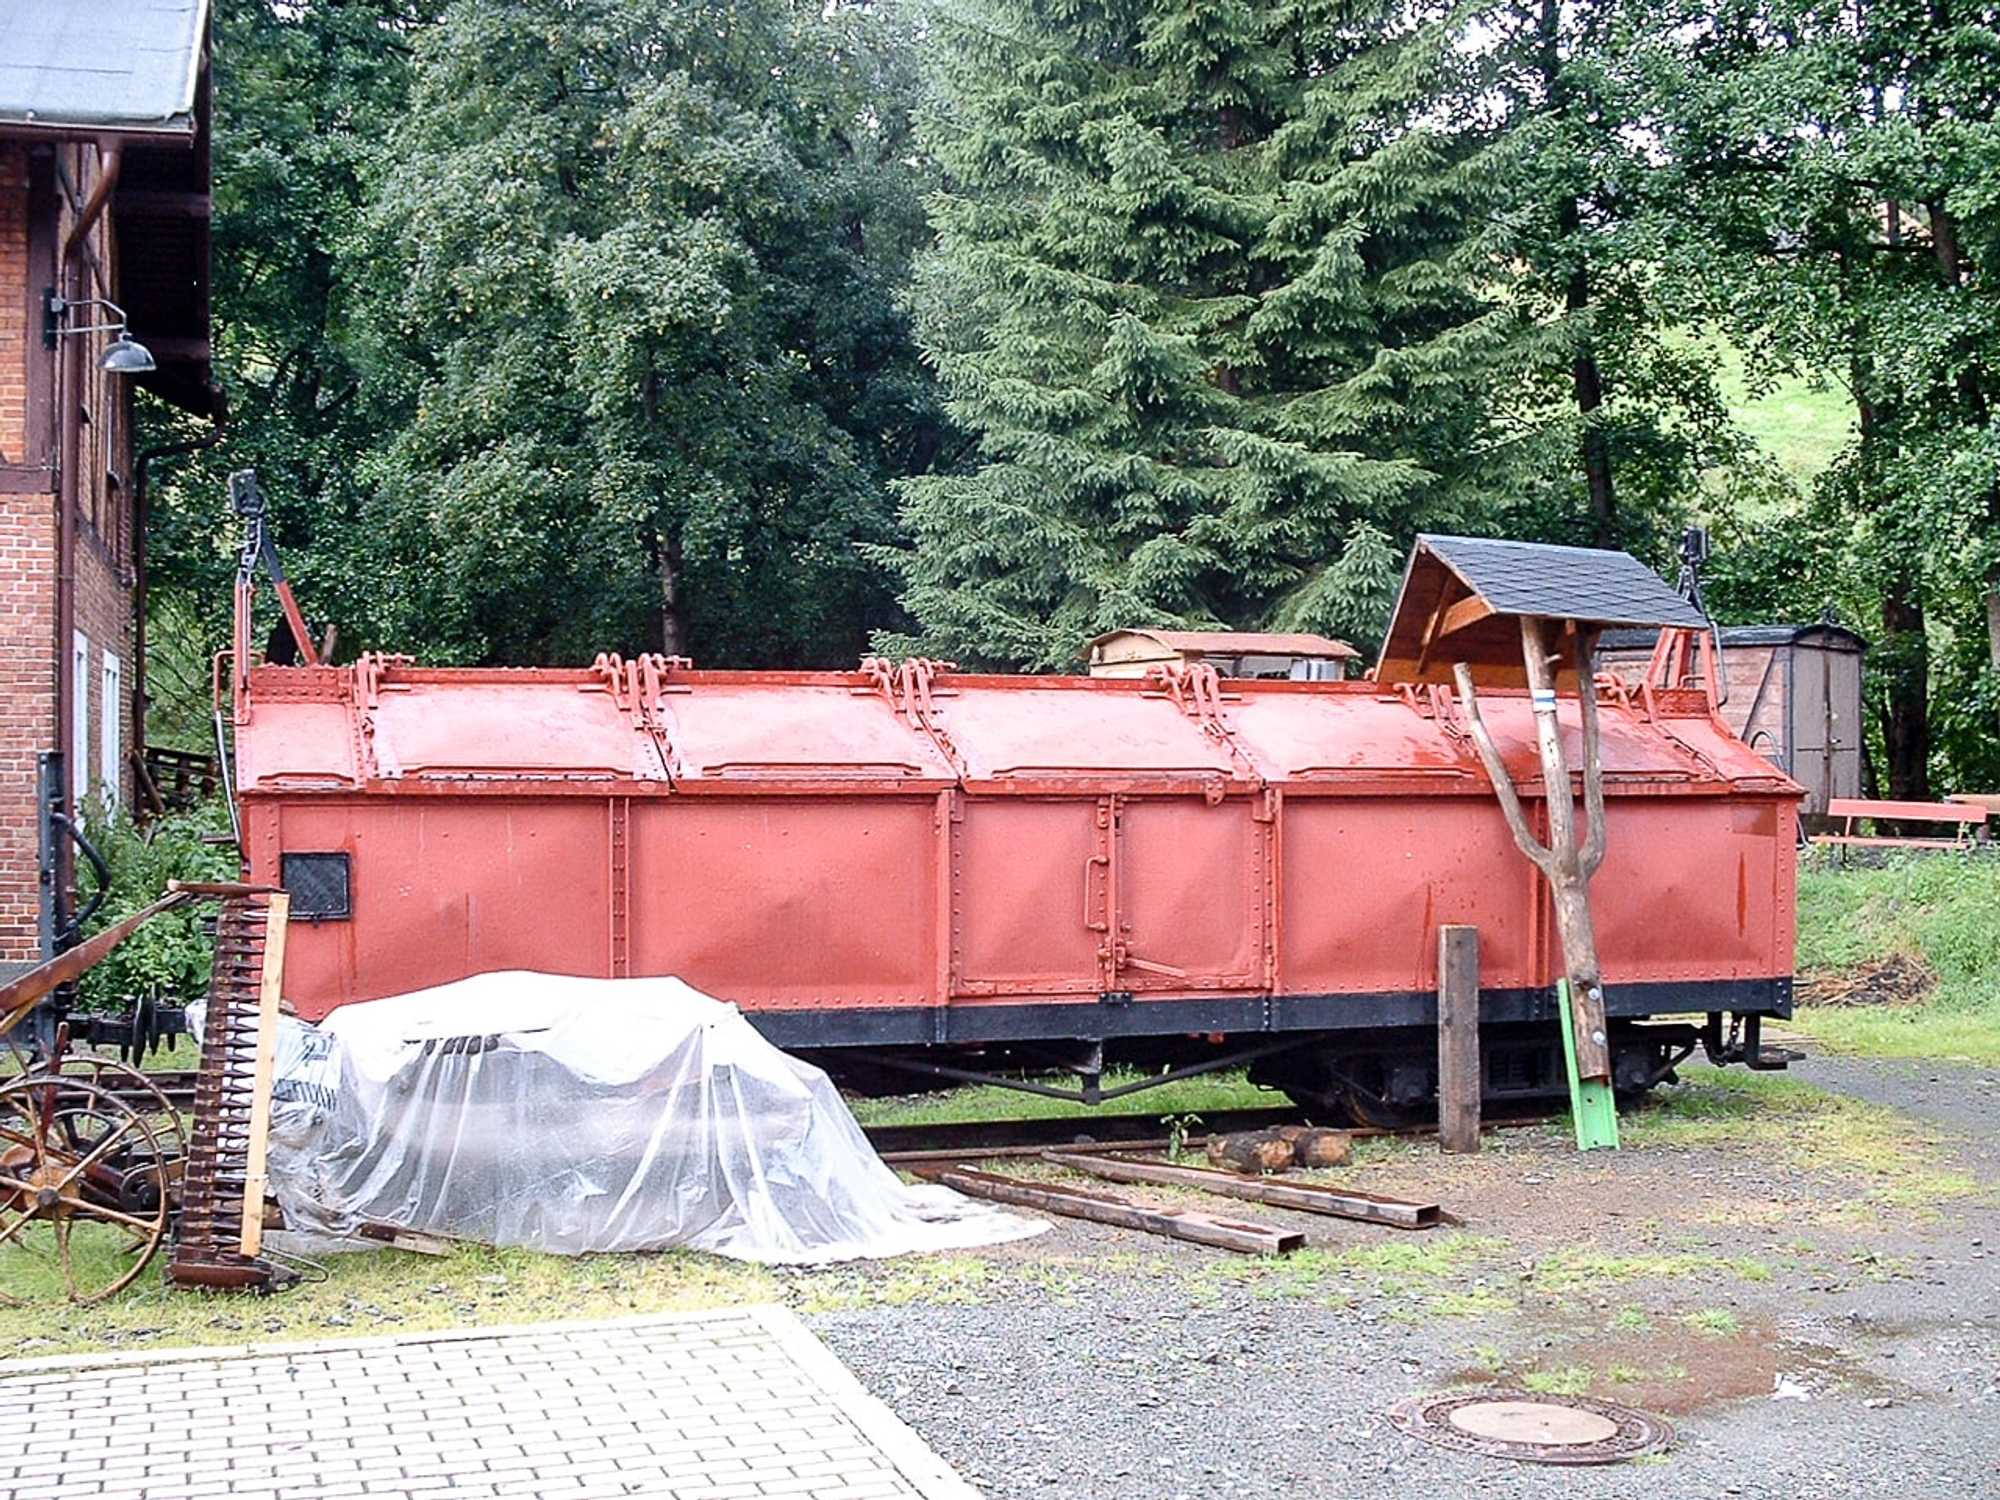 Der KKw 97-27-04 soll in Rittersgrün neu gestrichen und beschriftet werden, hier ein Bild von 2008.